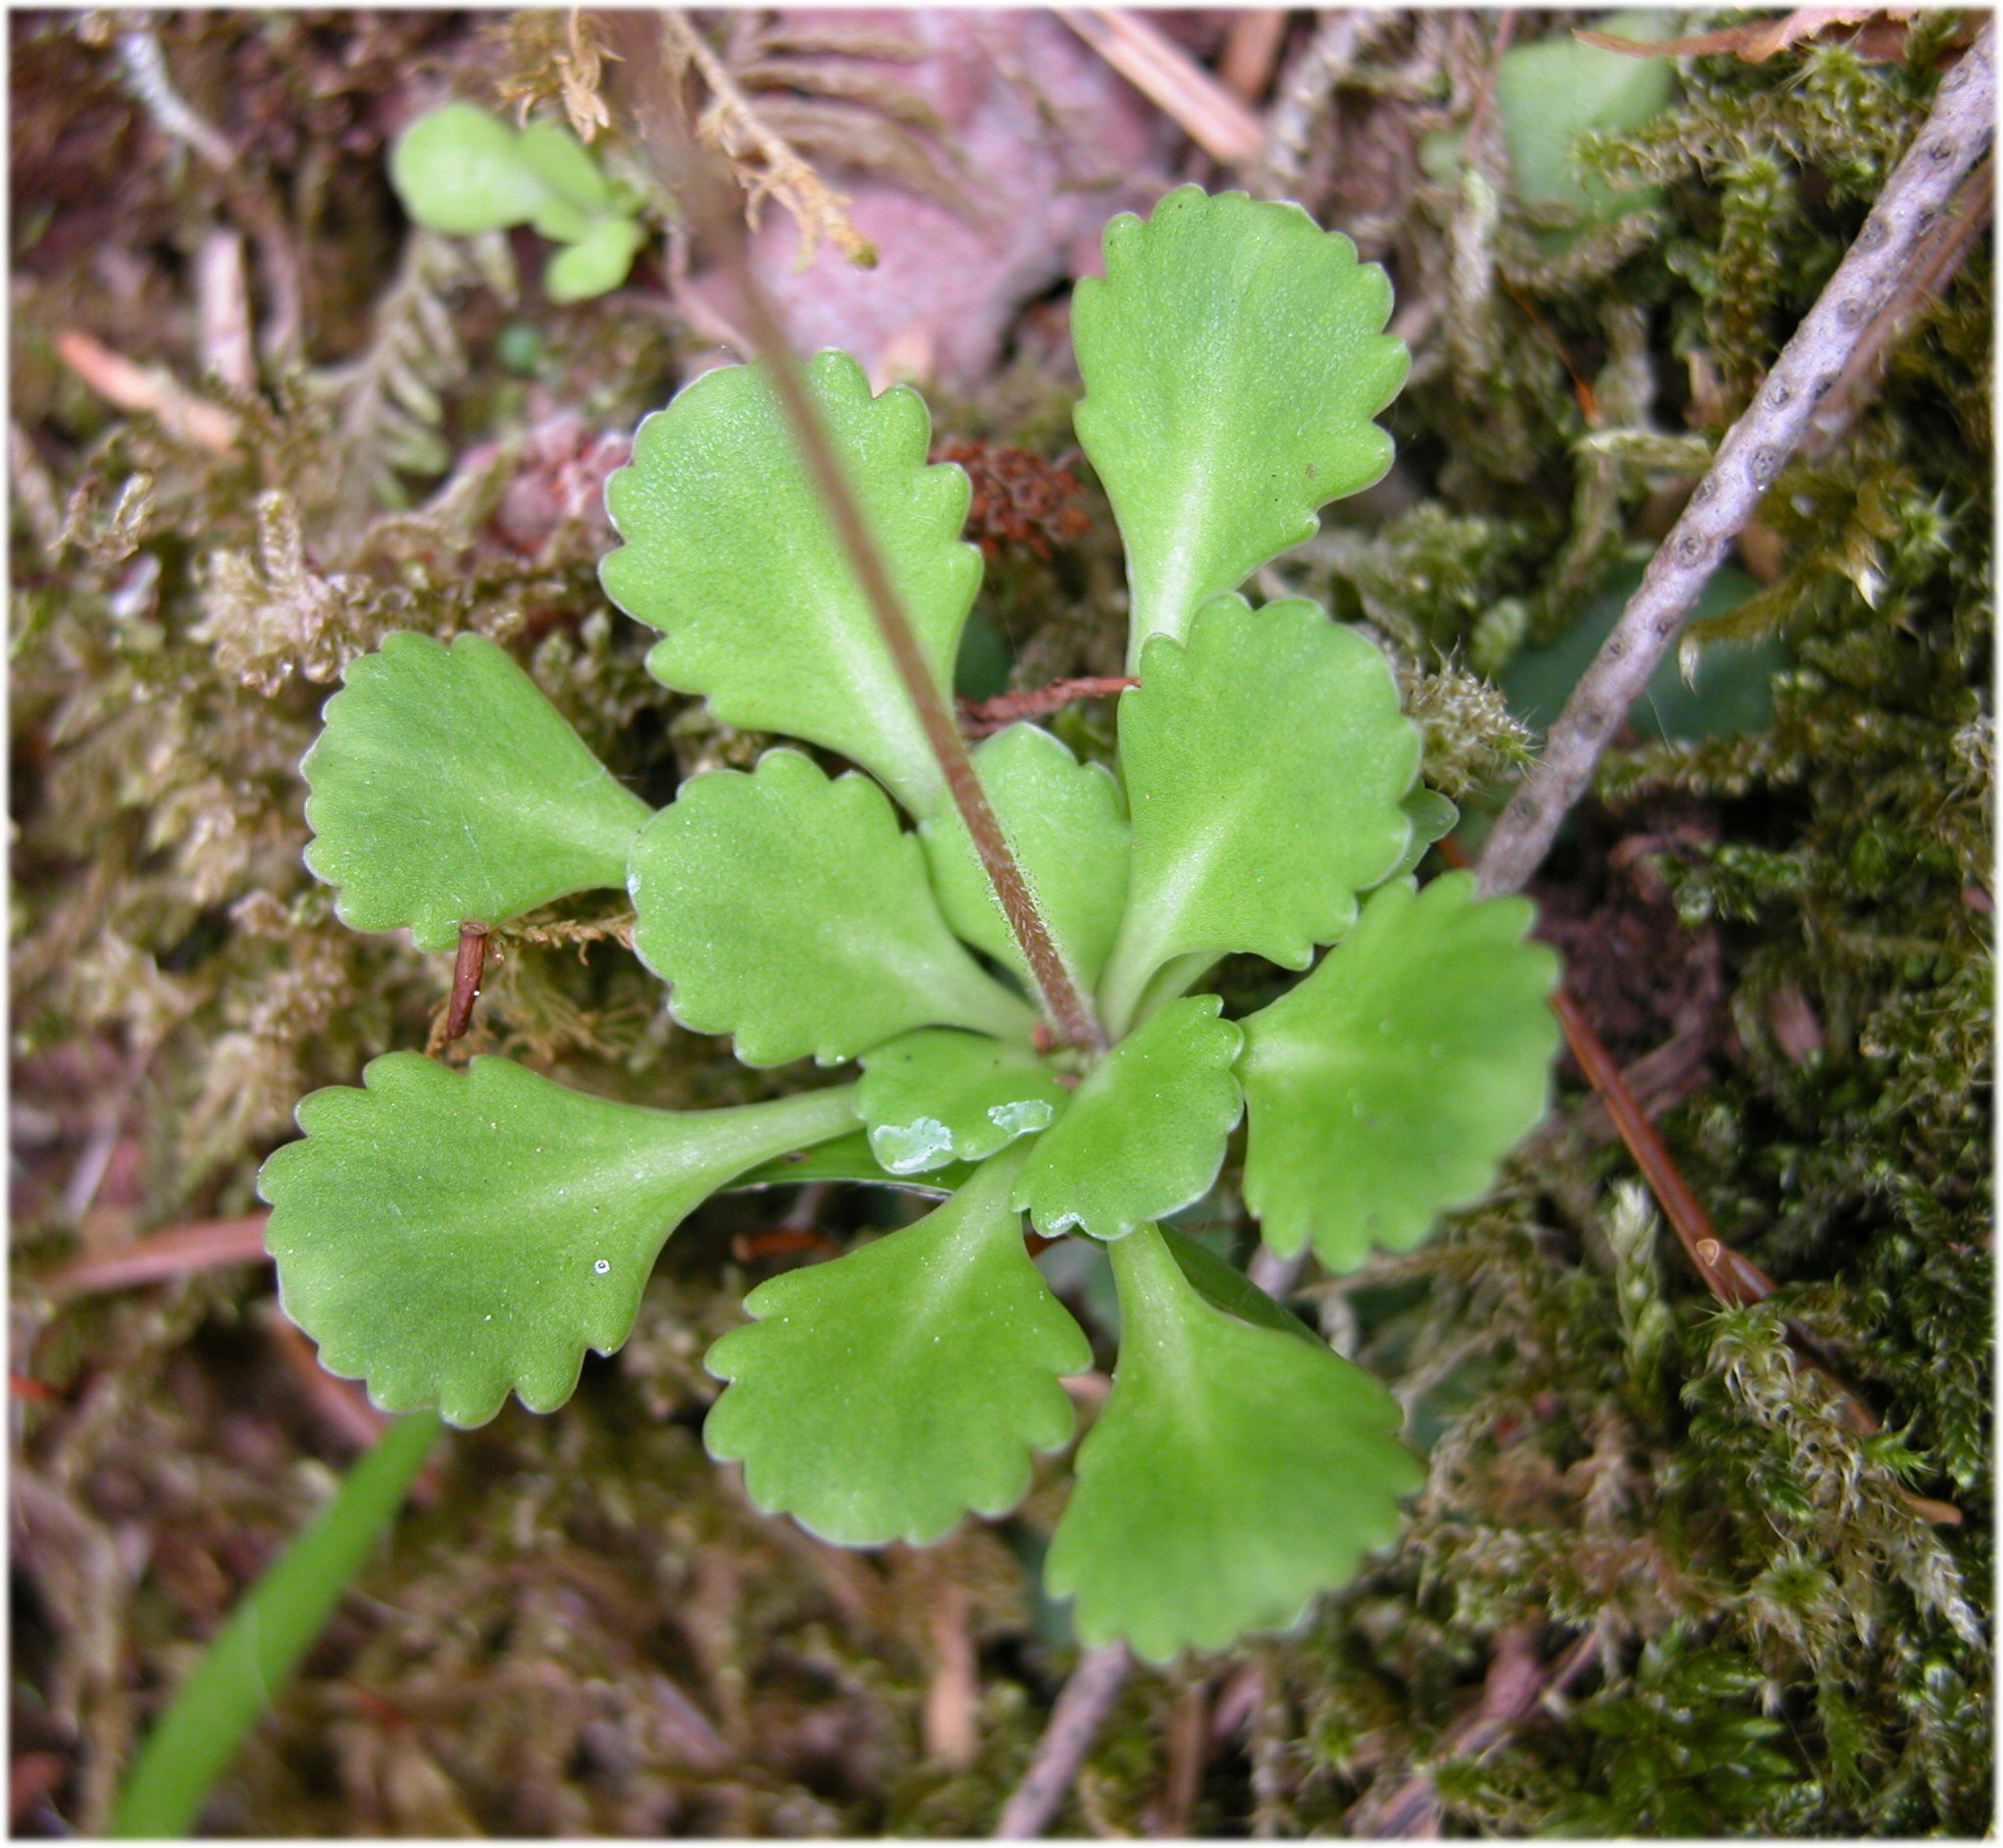 Saxifraga cuneifolia L. subsp. robusta D.A.Webb - FVG